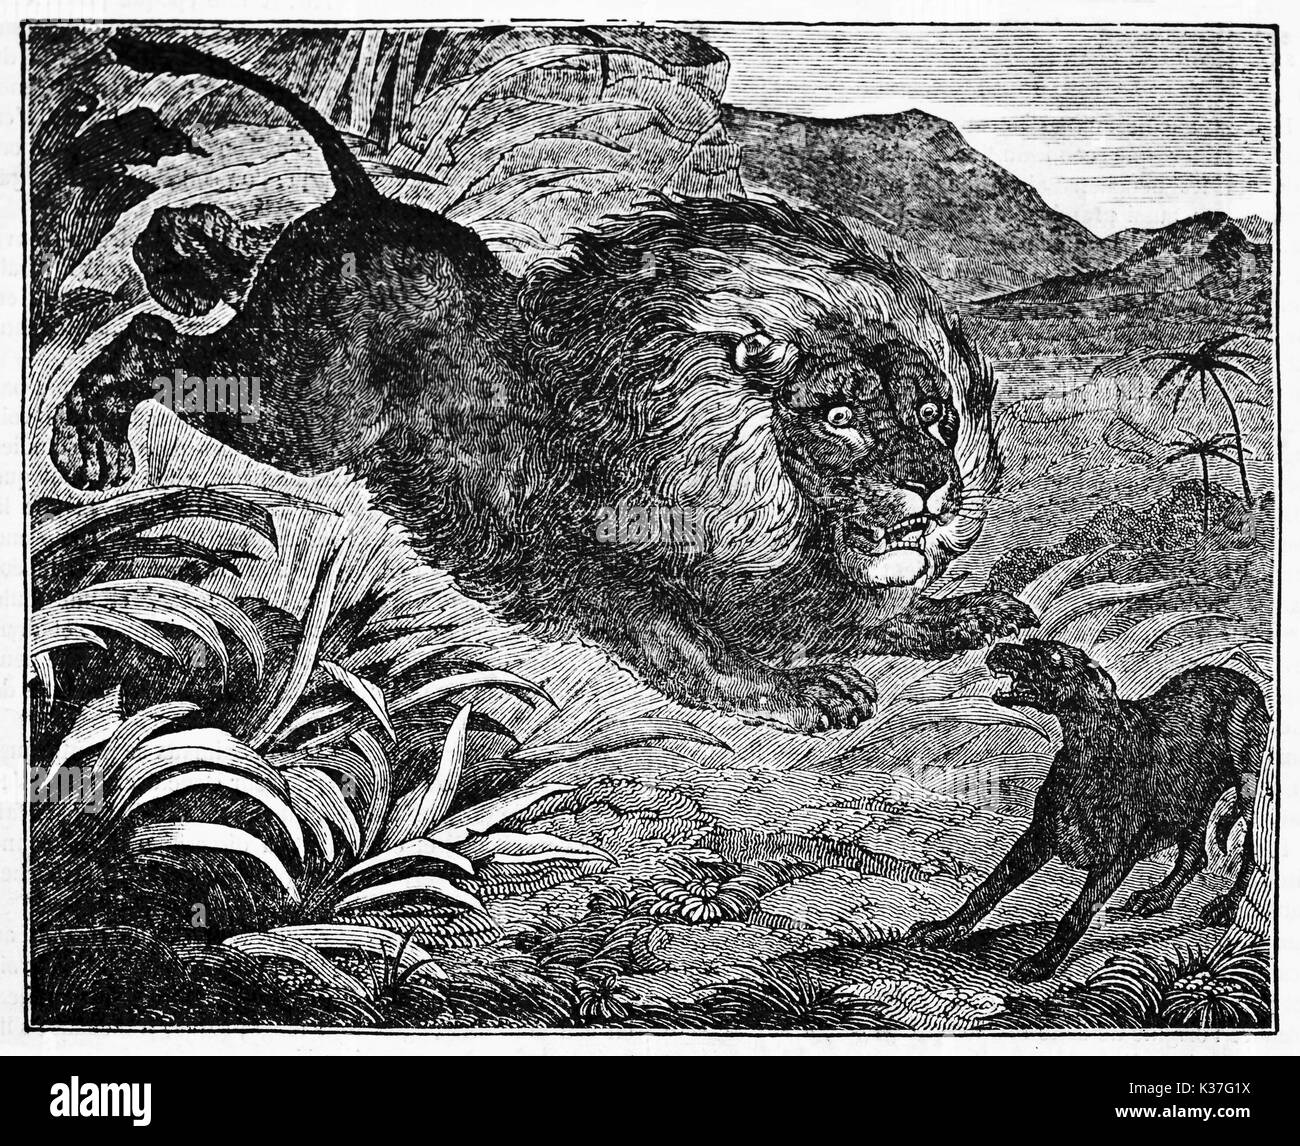 Attaques de chien Lion peur dans la jungle avec une terrible embuscade. Vieille Illustration d'auteur non identifié, publié le Magasin Pittoresque, Paris, 1834 Banque D'Images